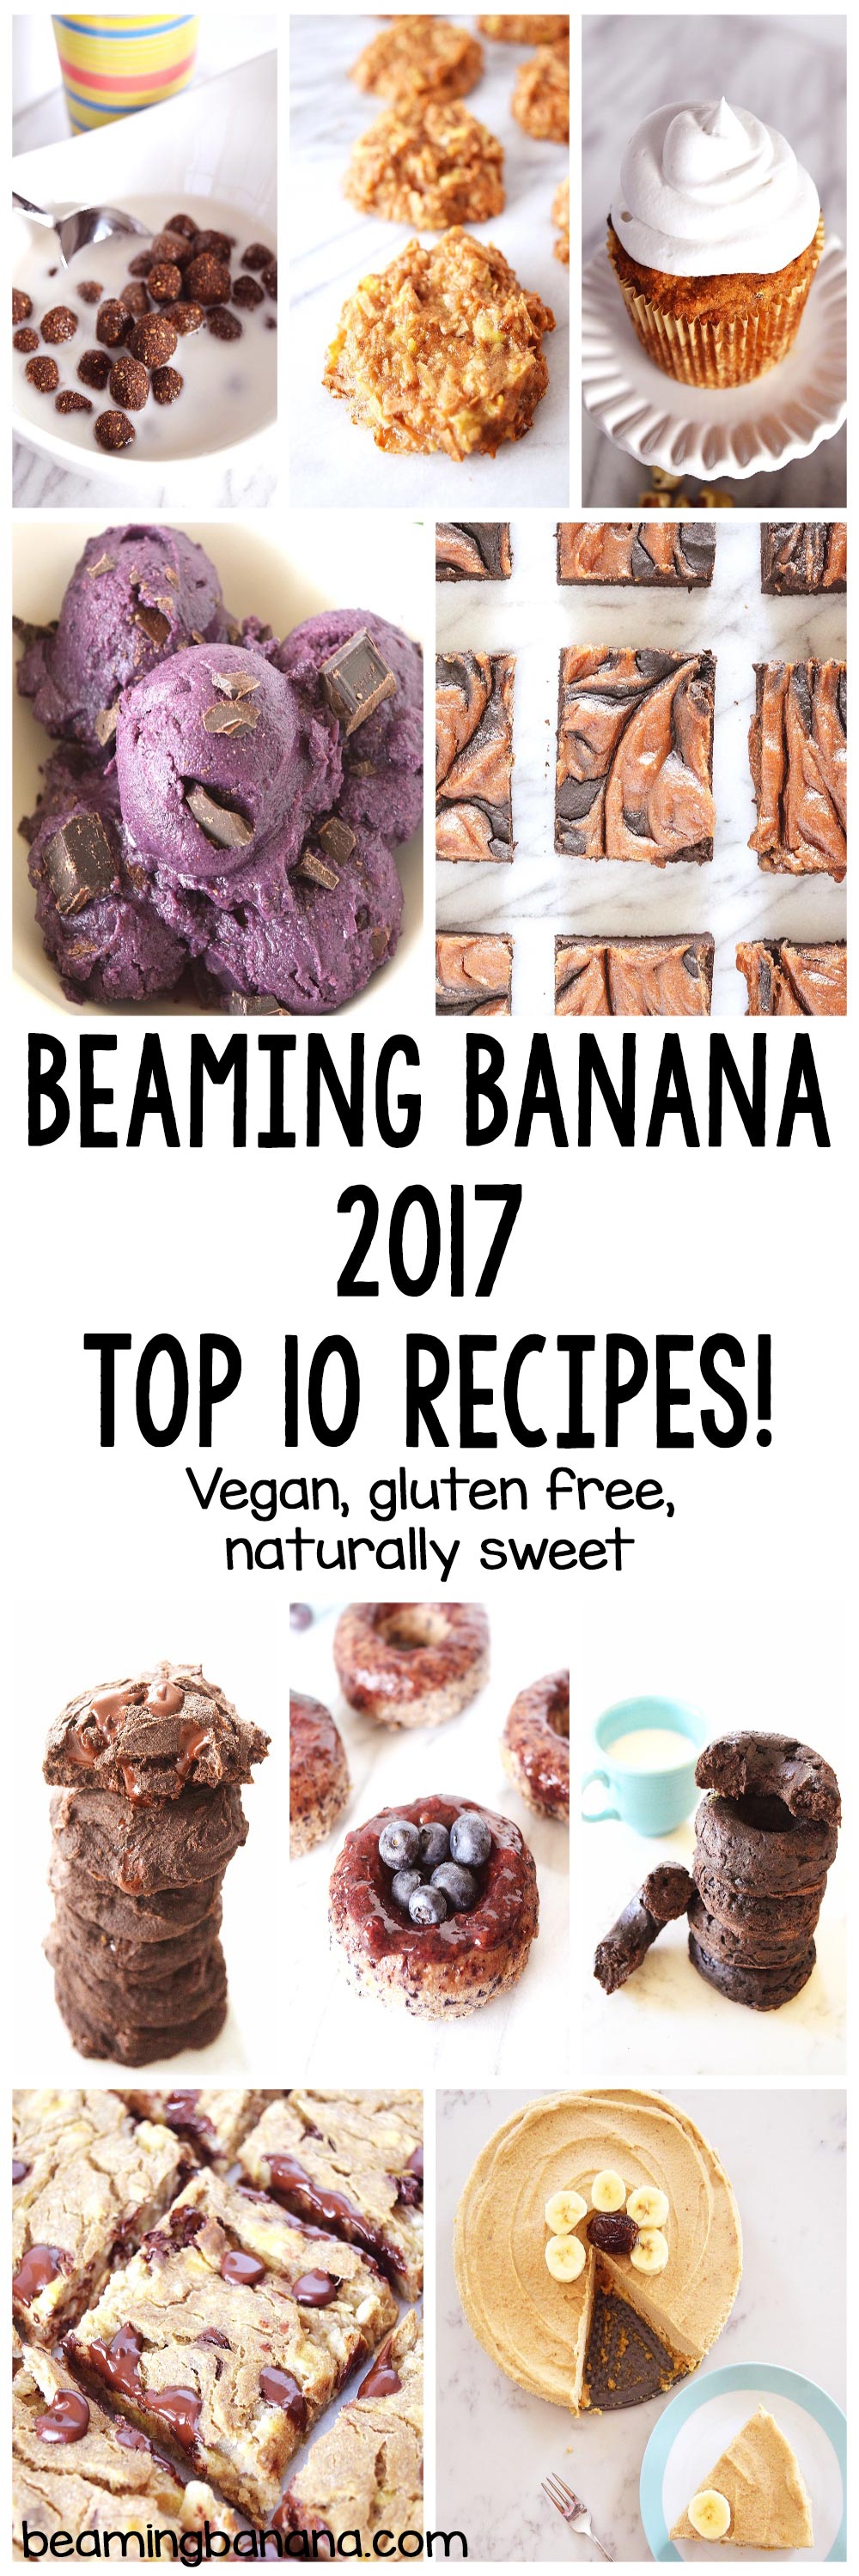 top 10 recipes of 2017!